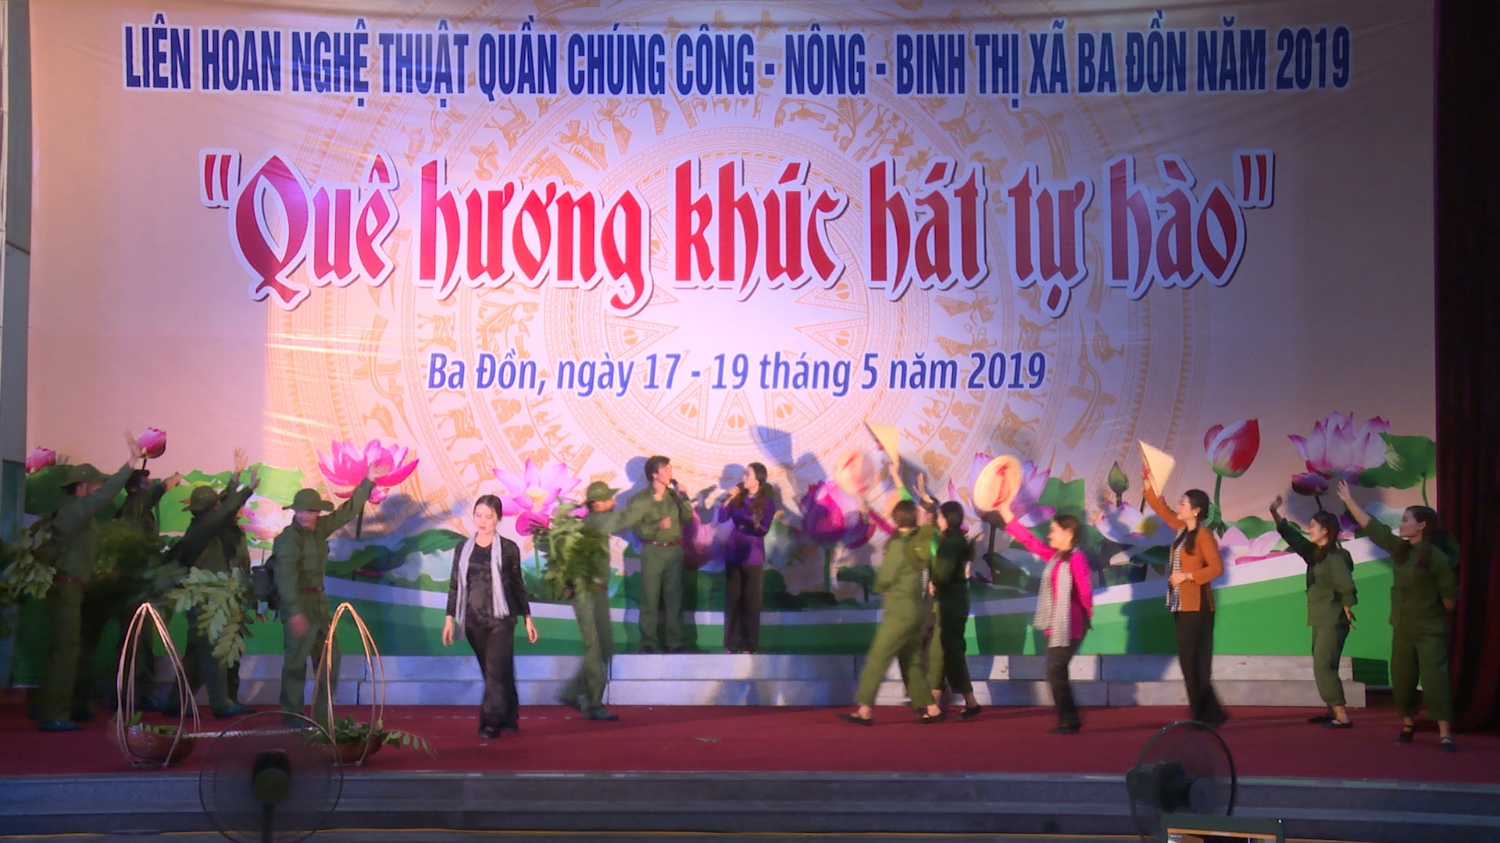 Thị xã Ba Đồn: Tổ chức thành công Liên hoan nghệ thuật quần chúng Công-Nông-Binh năm 2019